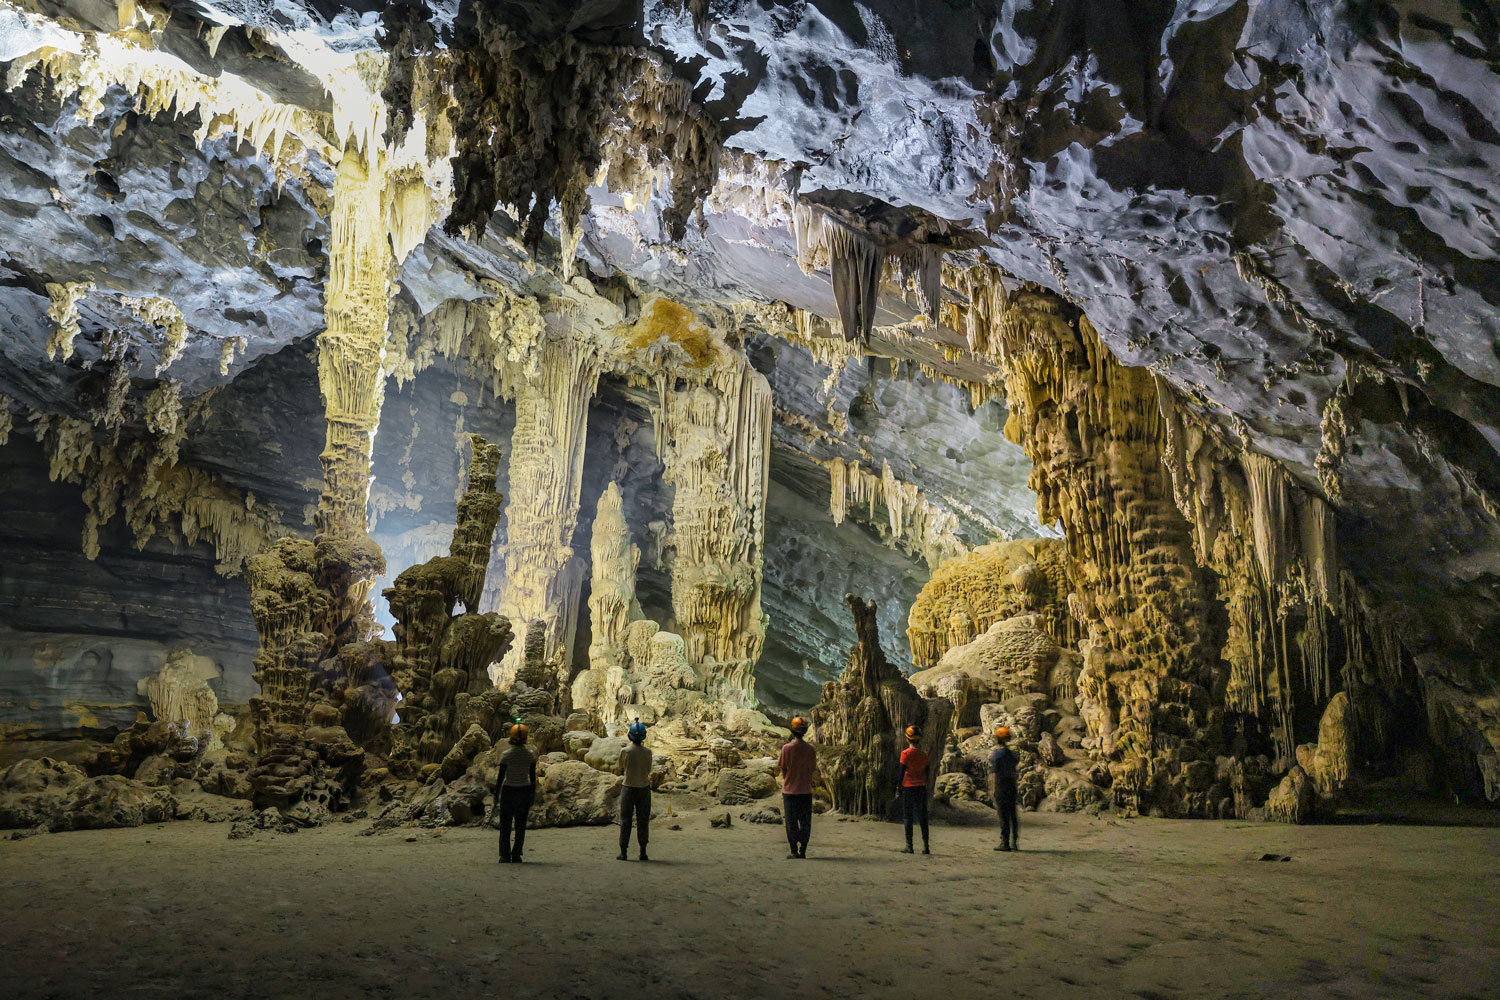 Hệ thống thạch nhũ độc đáo trong hang động Tú Làn.